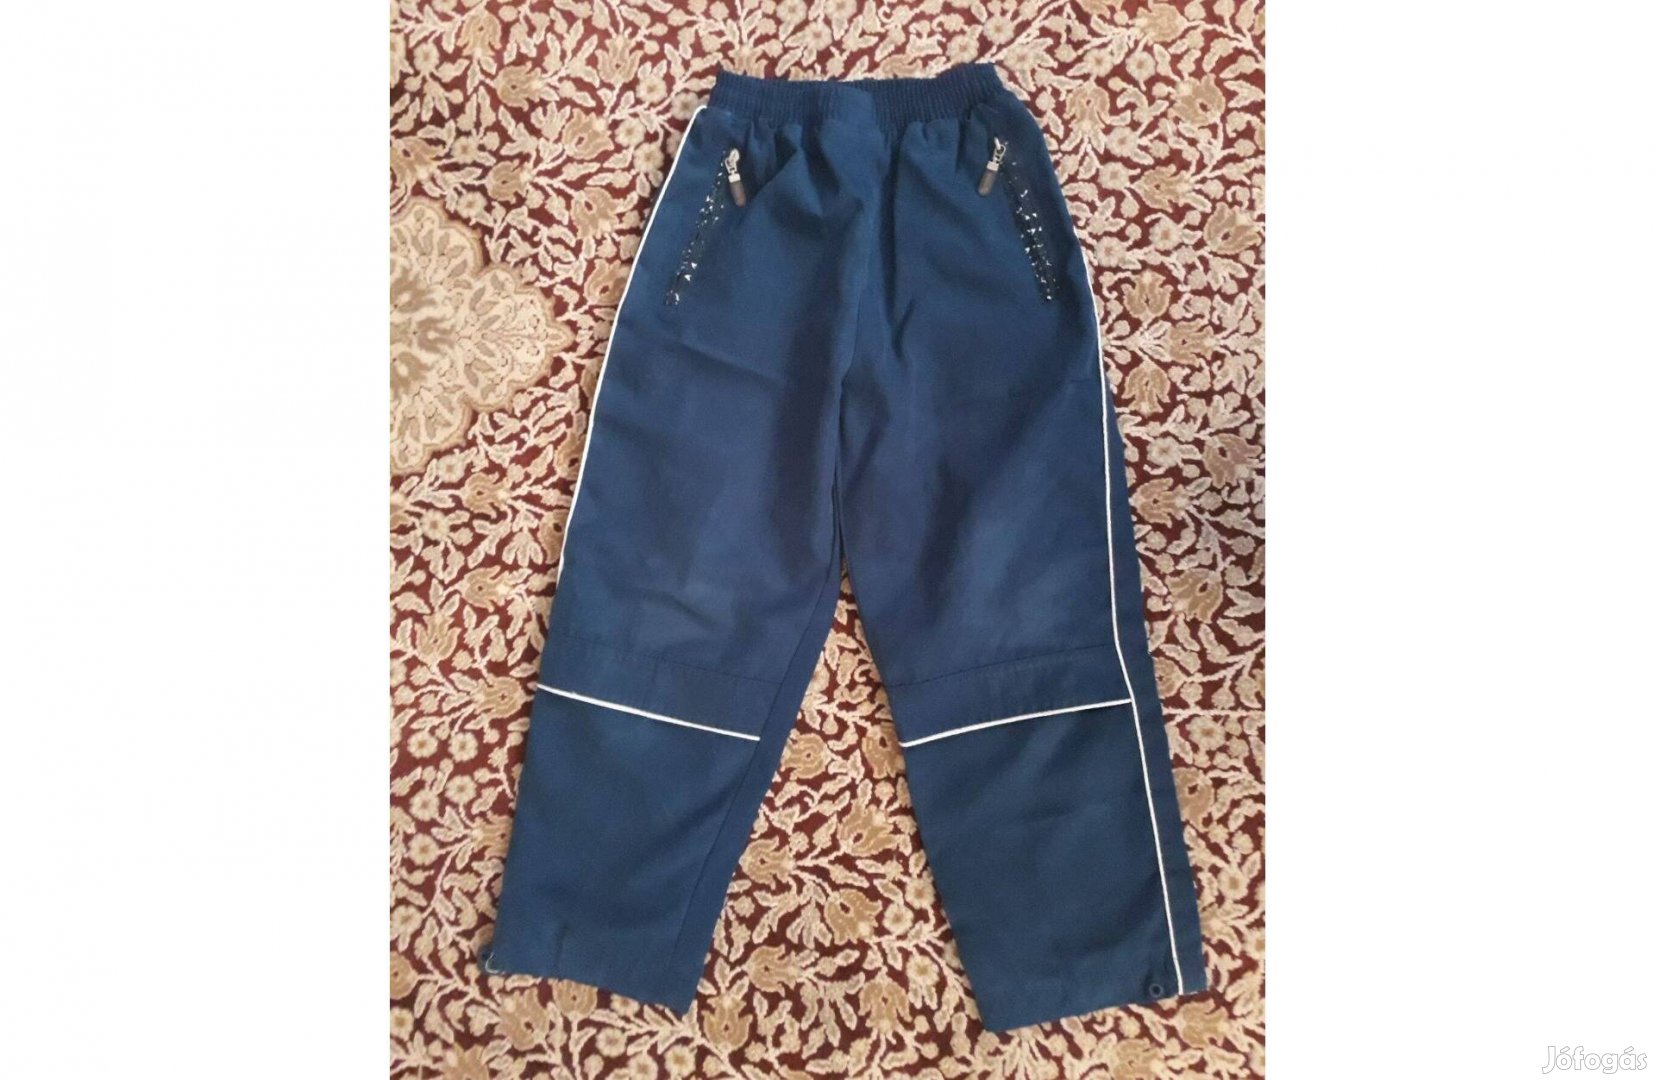 Overál nadrág, téli nadrág, kb. 6 évesre, H: 70 cm